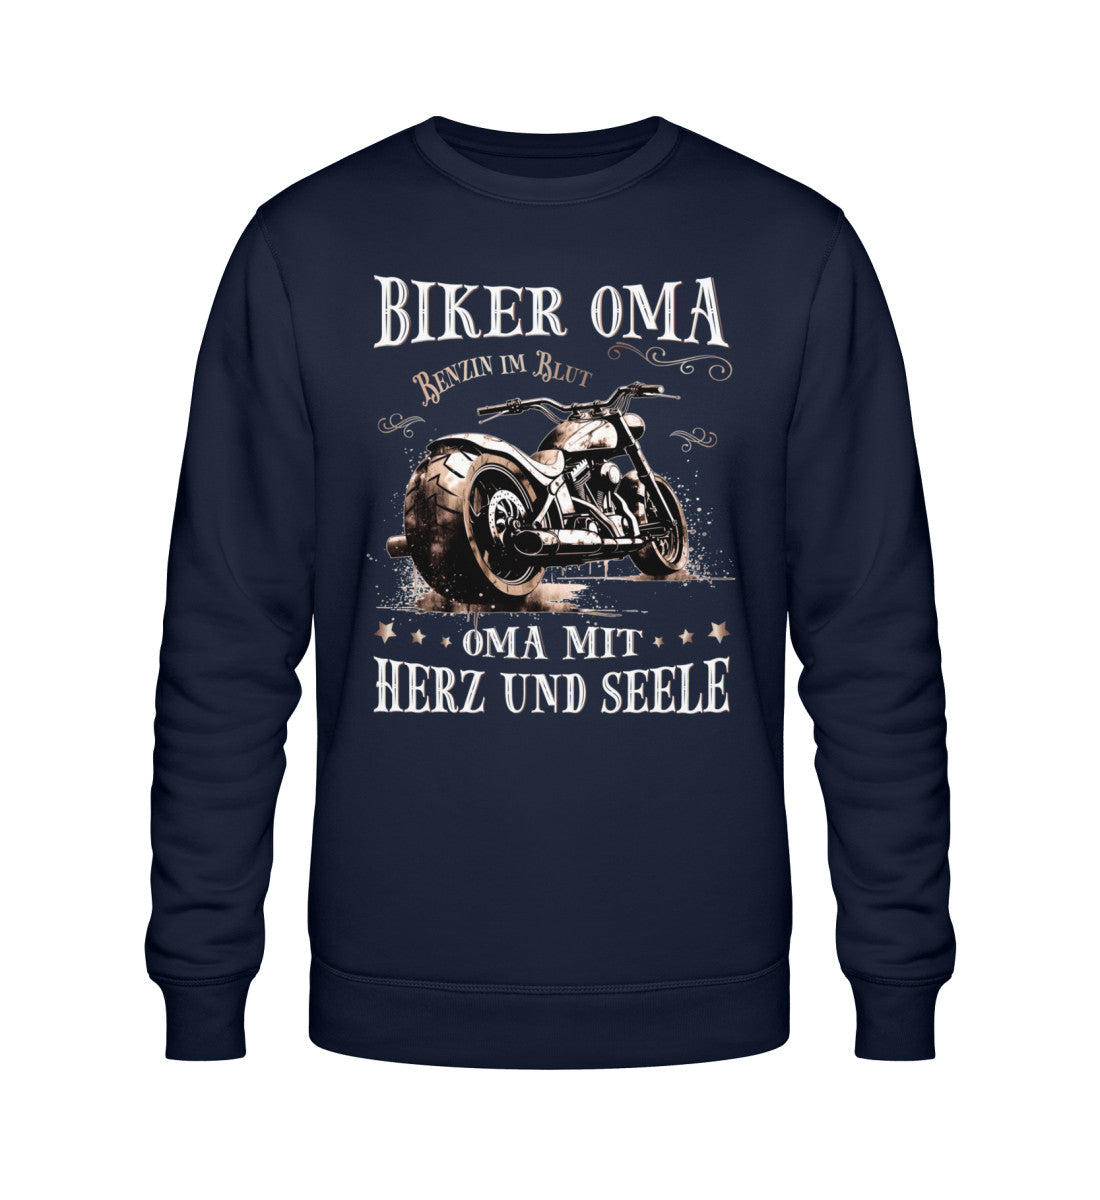 Ein Sweatshirt für Motorradfahrerinnen von Wingbikers mit dem Aufdruck, Biker Oma - Benzin im Blut - Oma mit Herz und Seele, in navy blau.